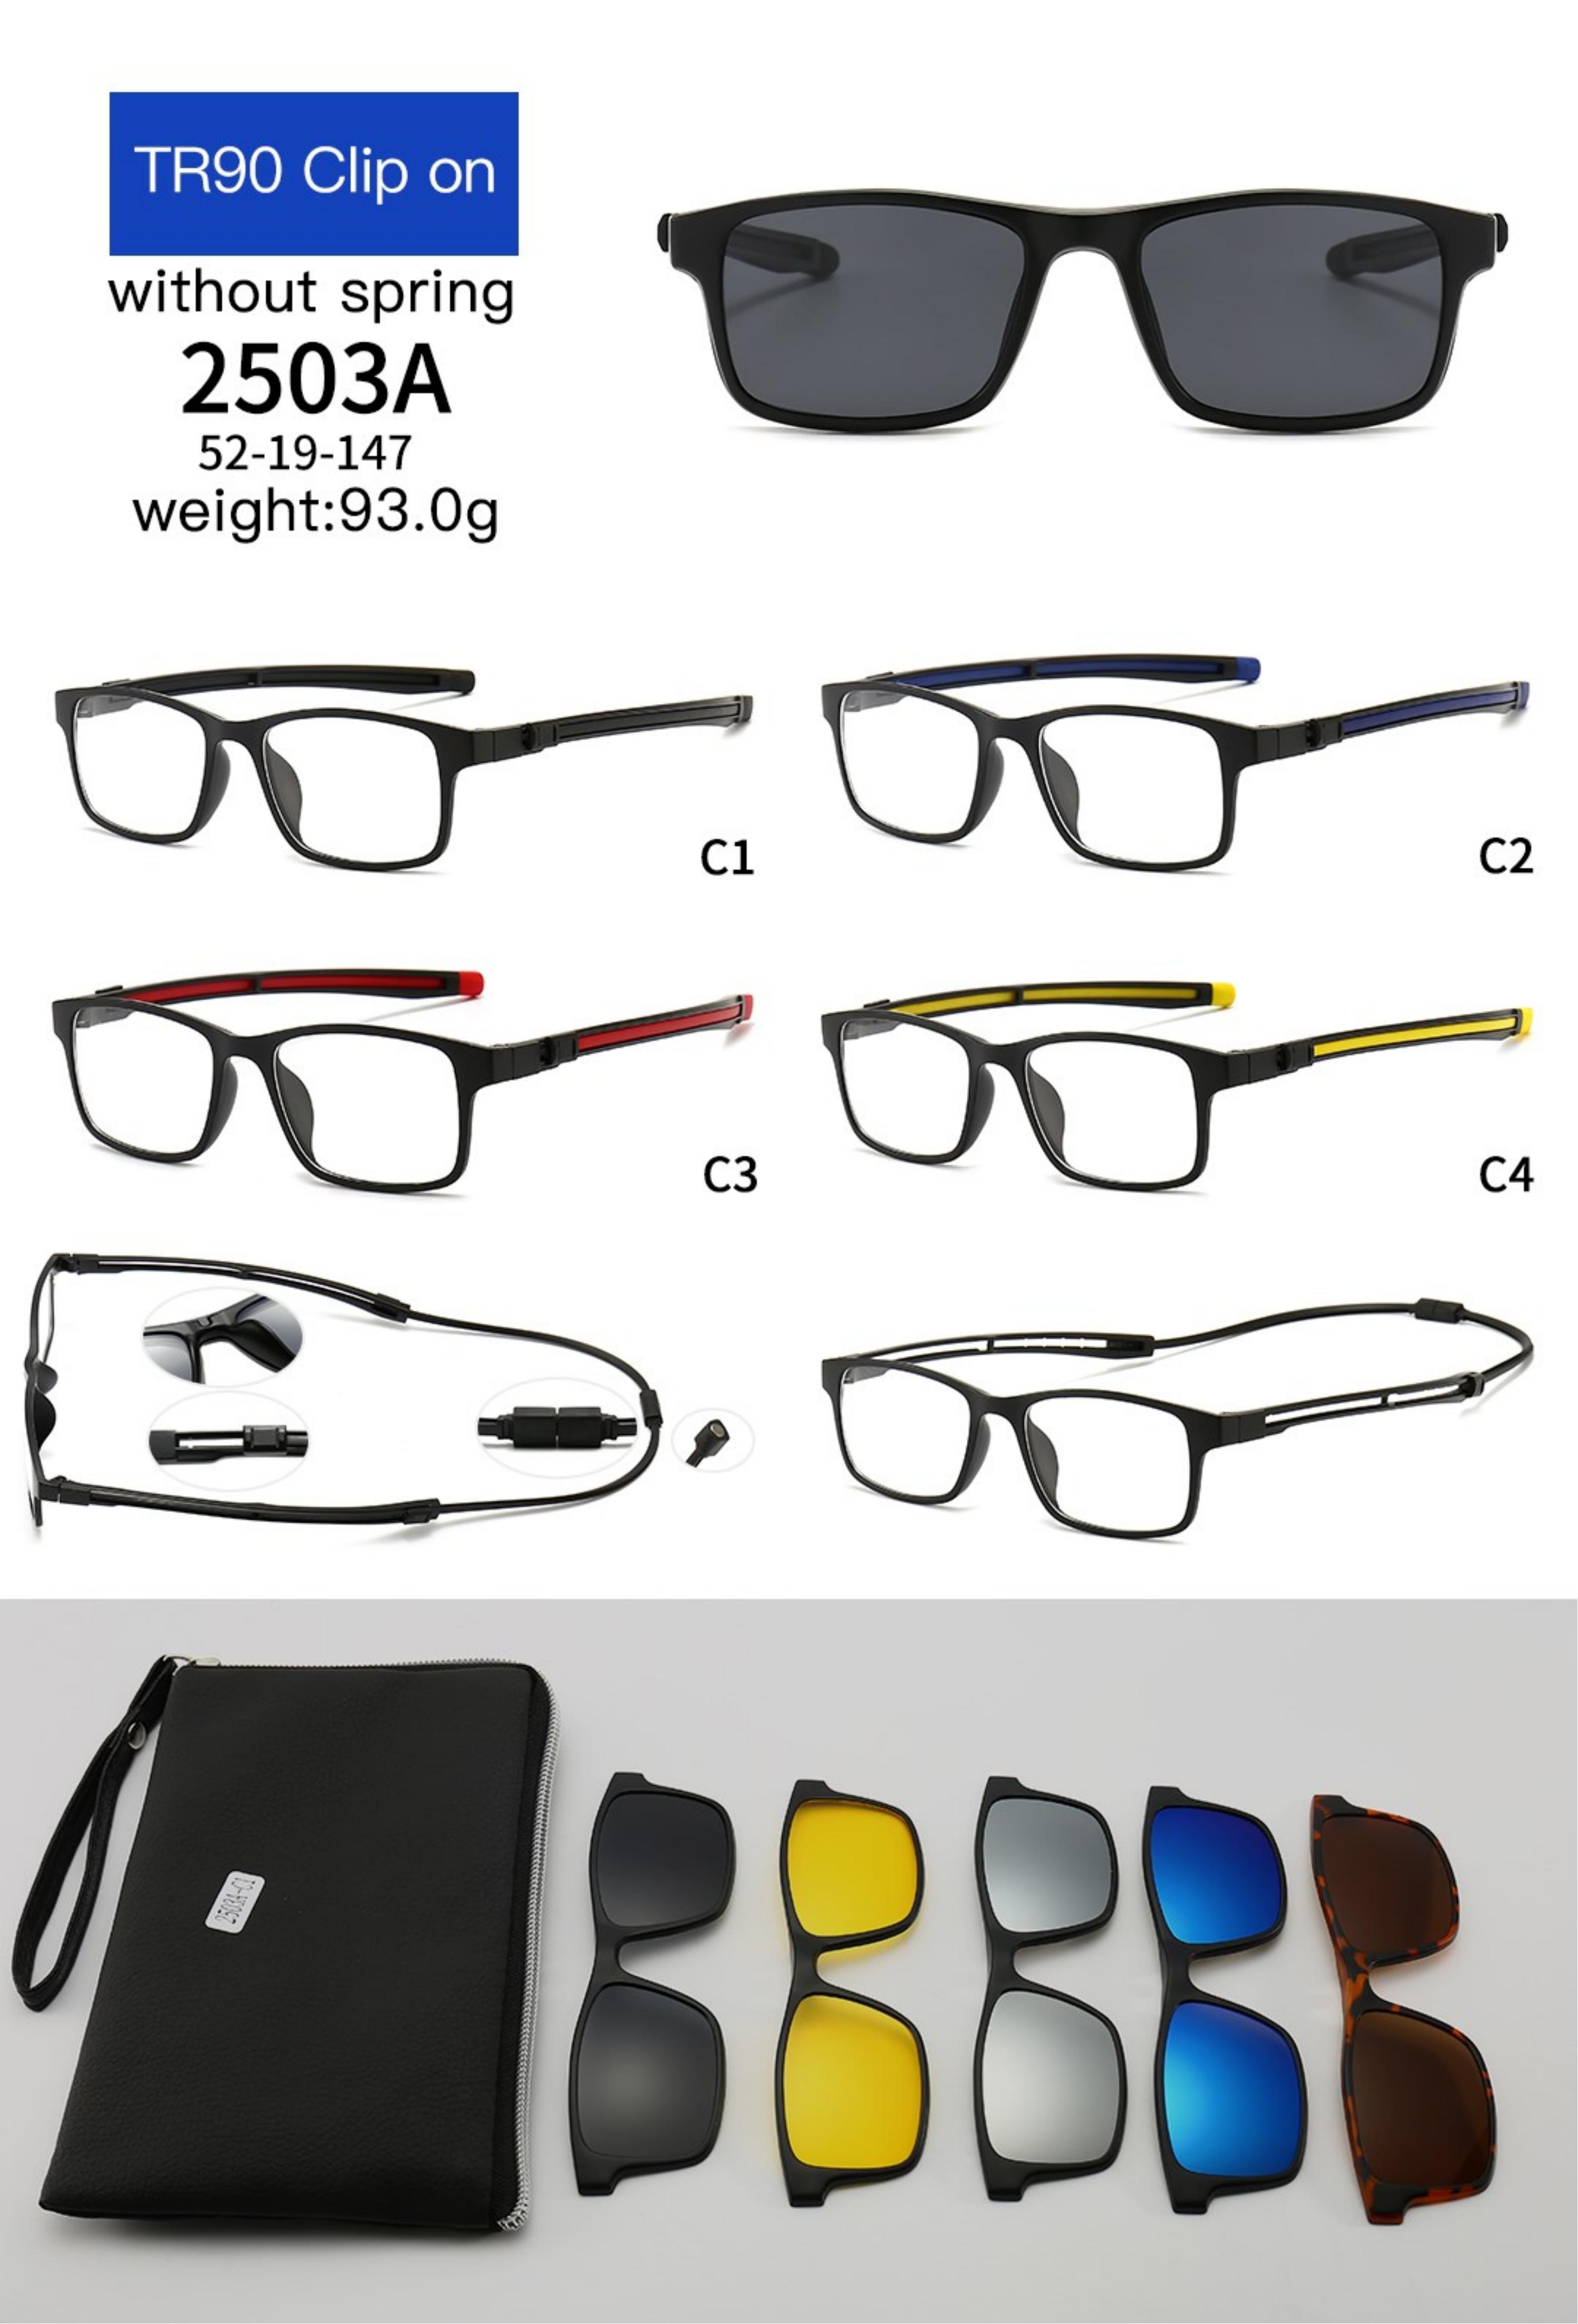 יצרן מקצועי התאמה אישית של משקפי שמש מקוטבים למשקפי שמש עם מסגרת מלאה